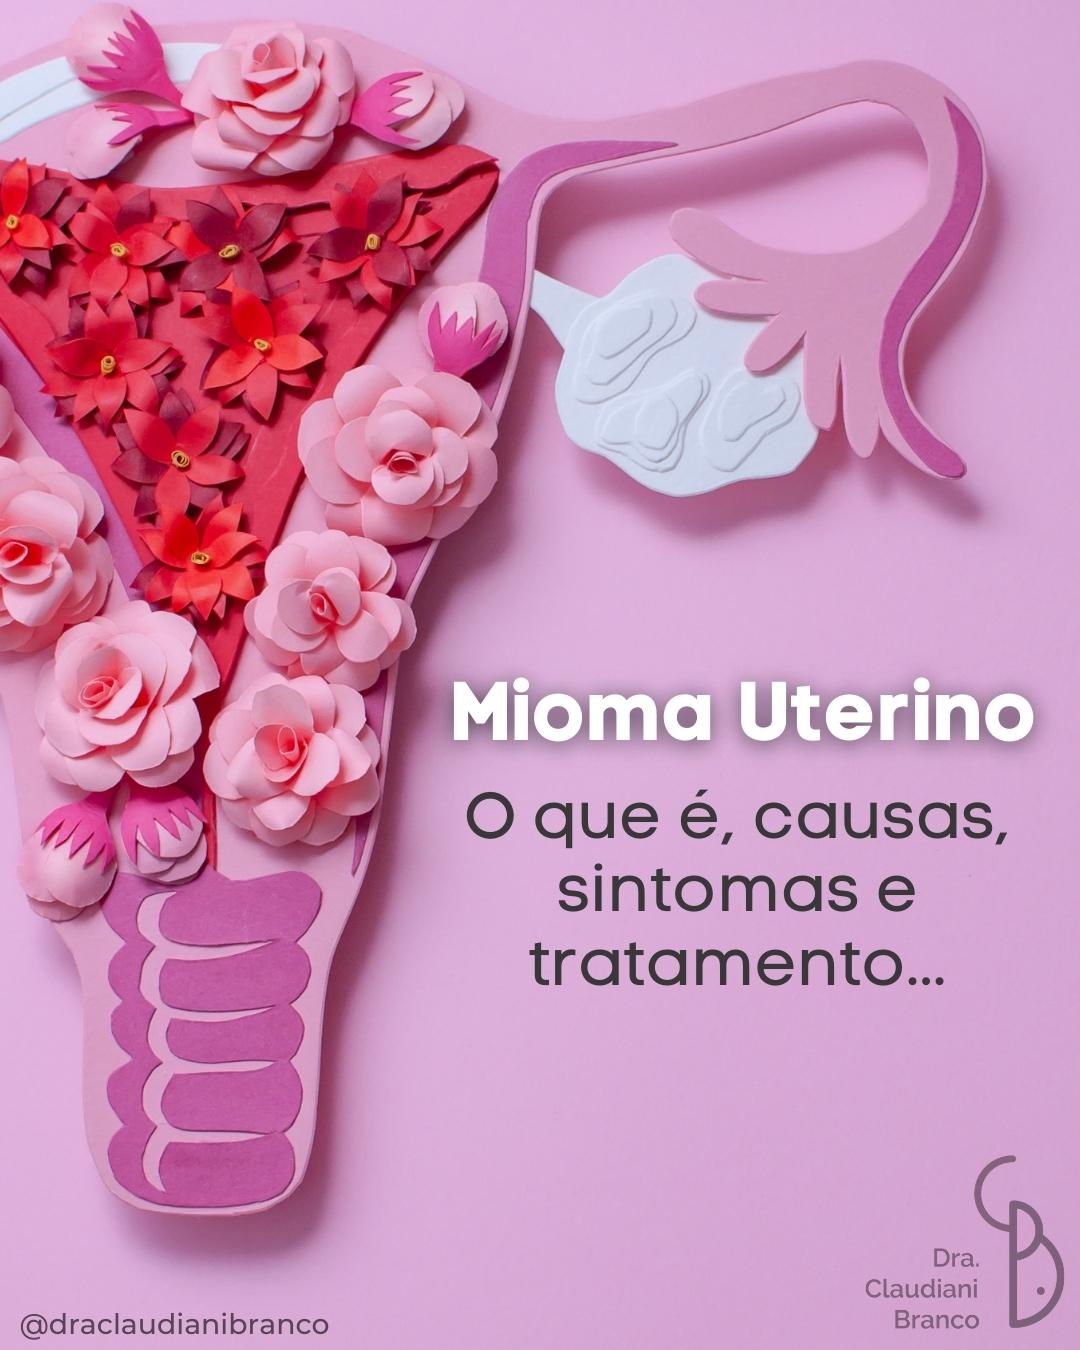 Mioma uterino o que é causas sintomas e tratamento Dra Claudiani Alves Branco Gregorin